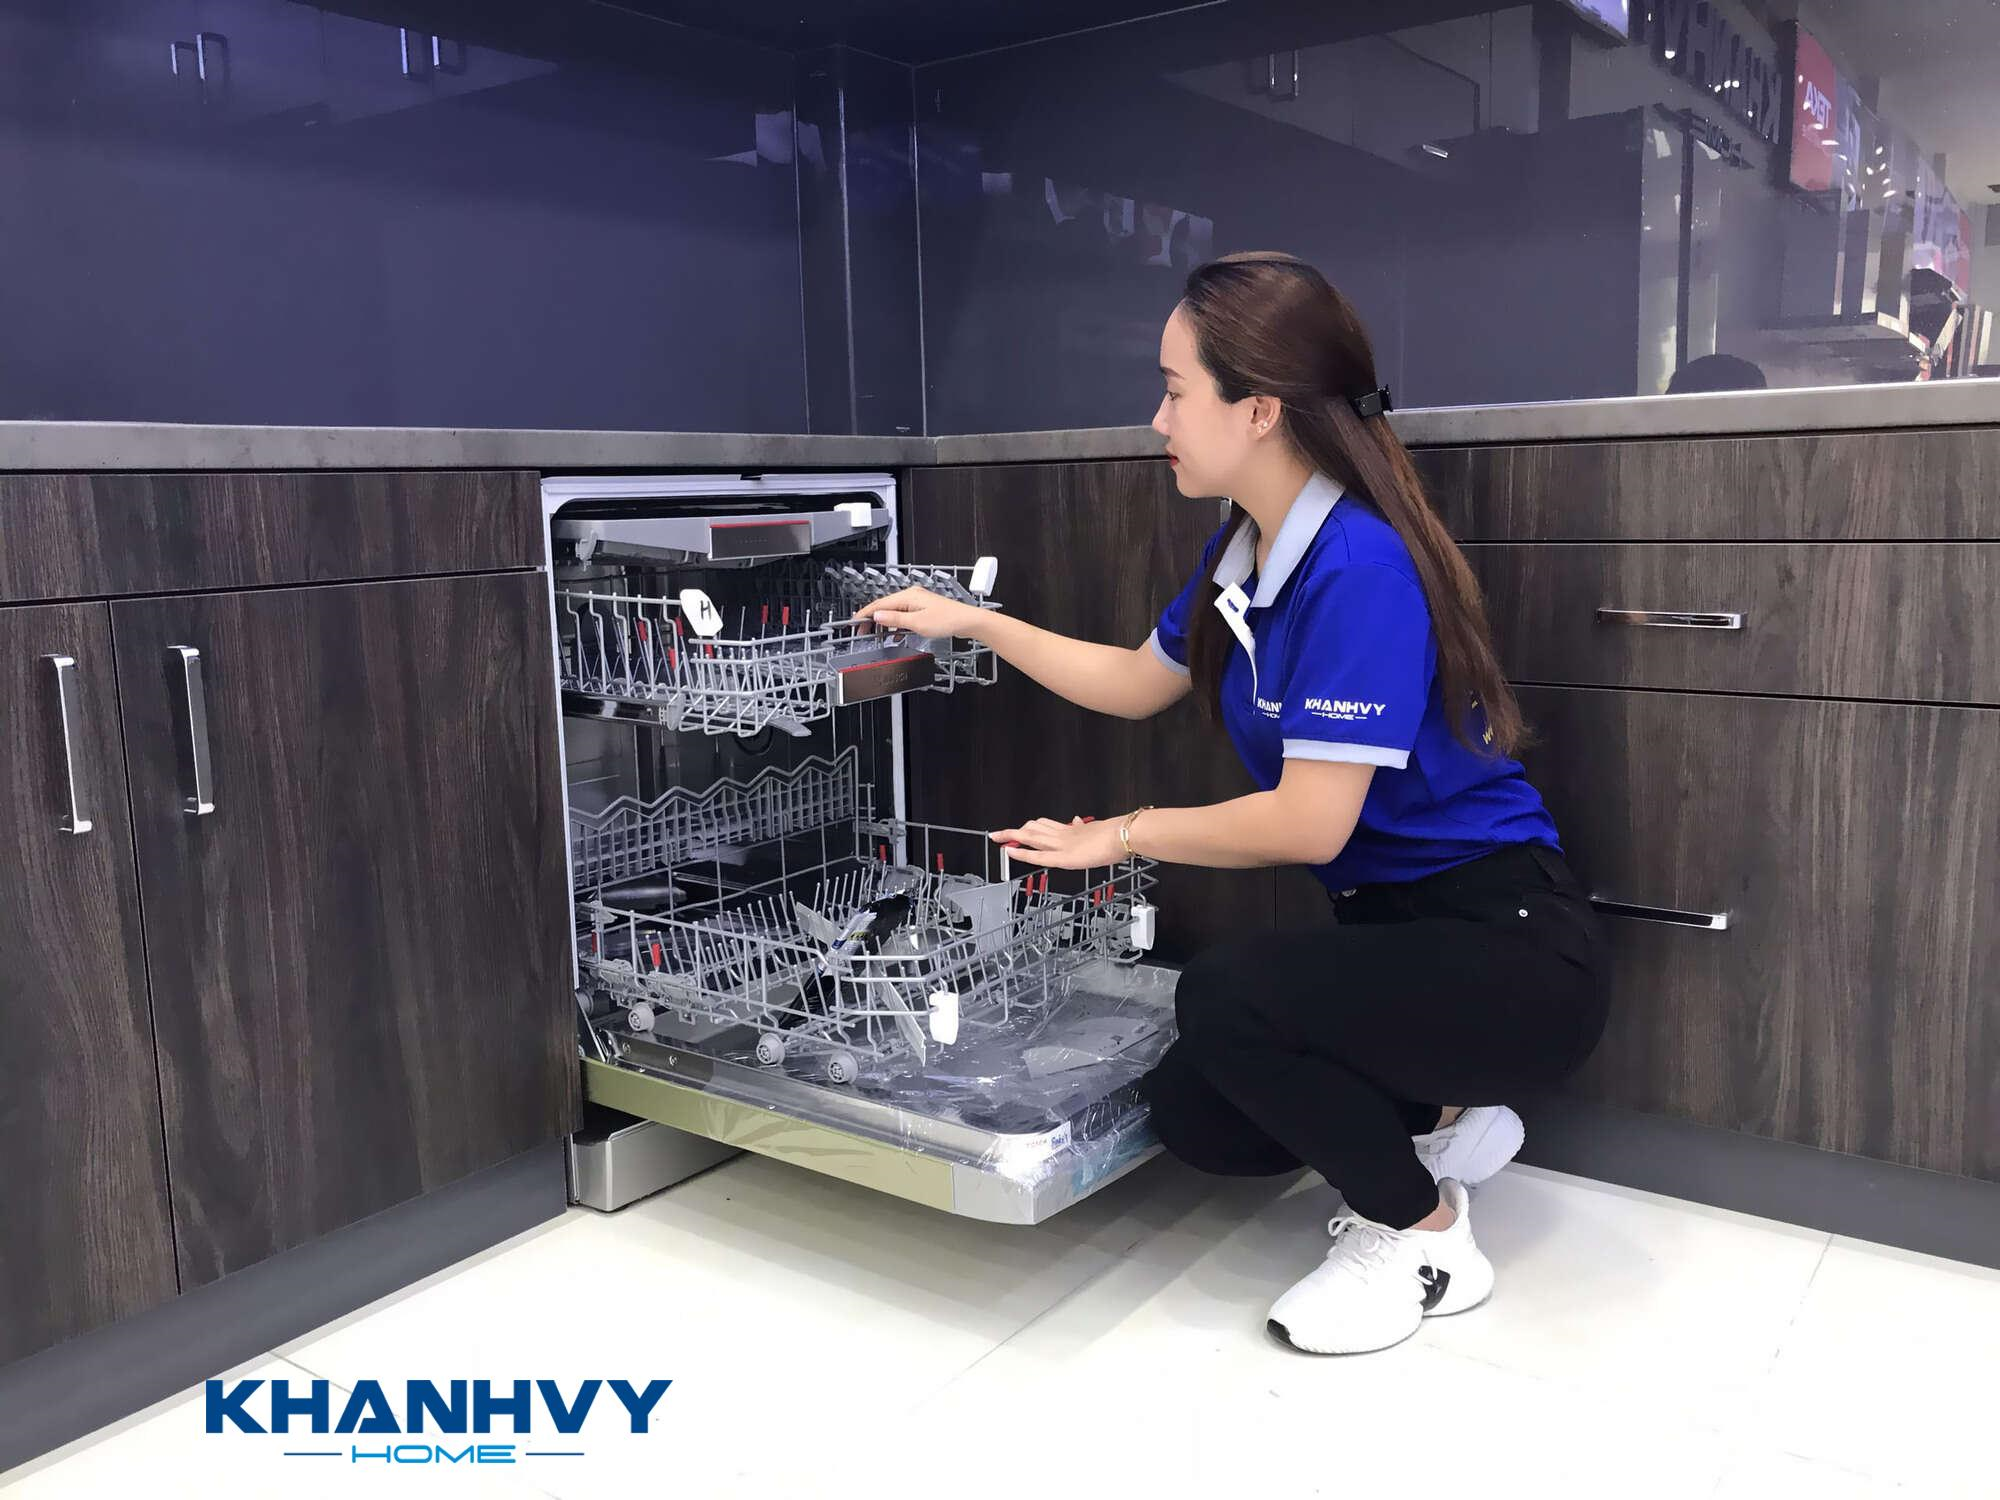 Khánh Vy Home cung cấp nhiều dòng máy rửa bát và dịch vụ sửa chữa, bảo hành máy rửa bát chất lượng cao